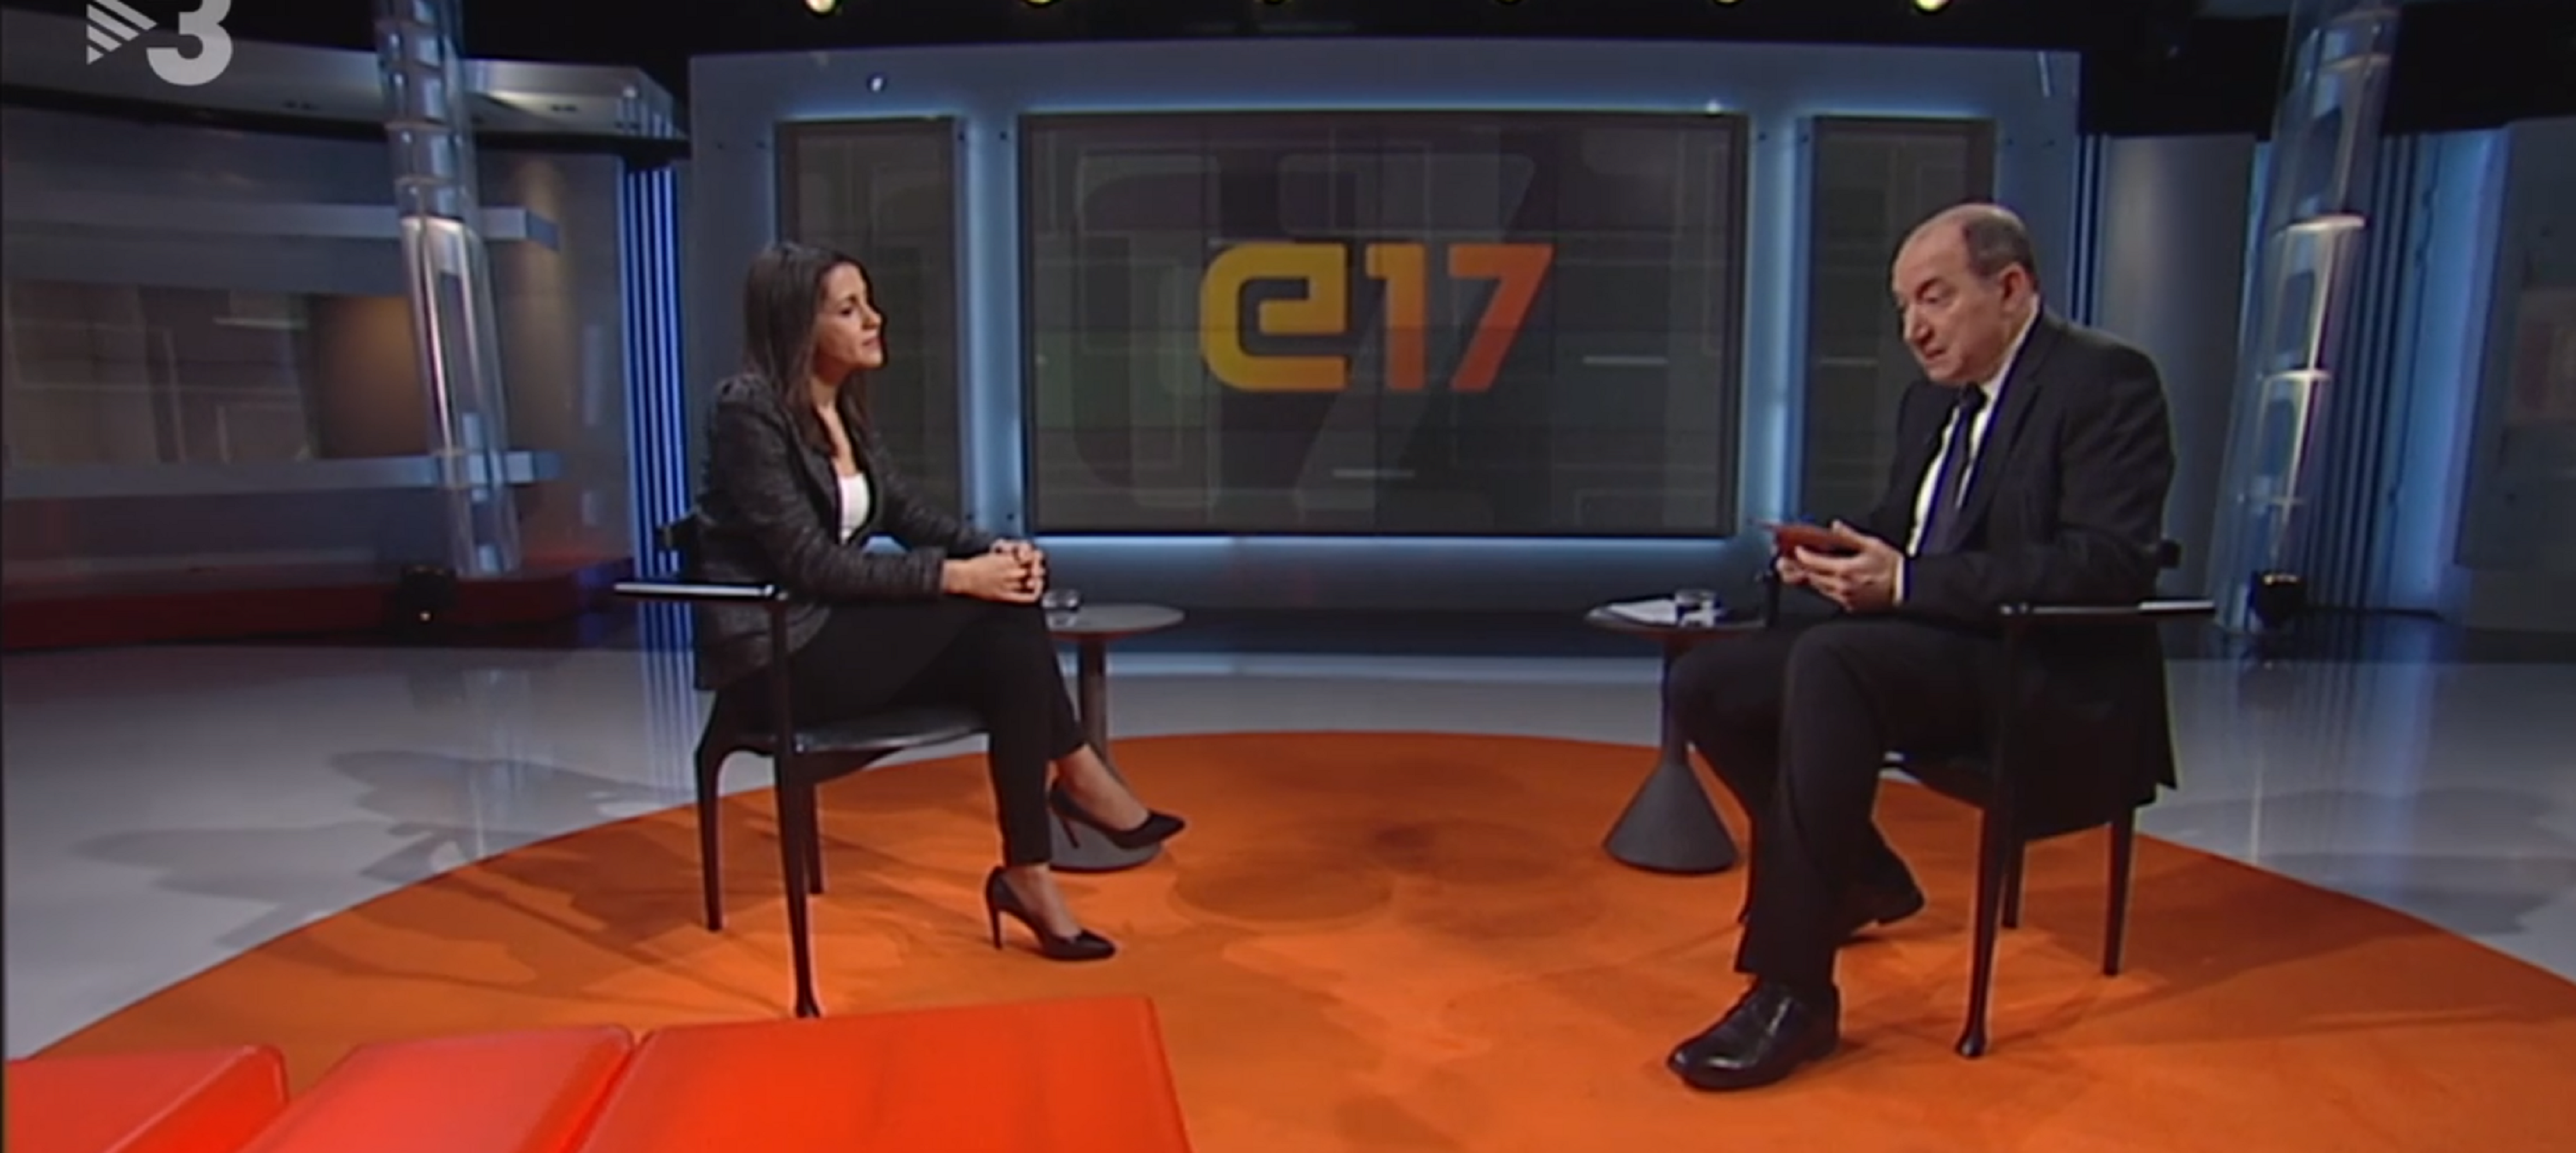 Espectadors contra l'entrevista que Sanchis farà a Inés Arrimadas: "Apagaré TV3"